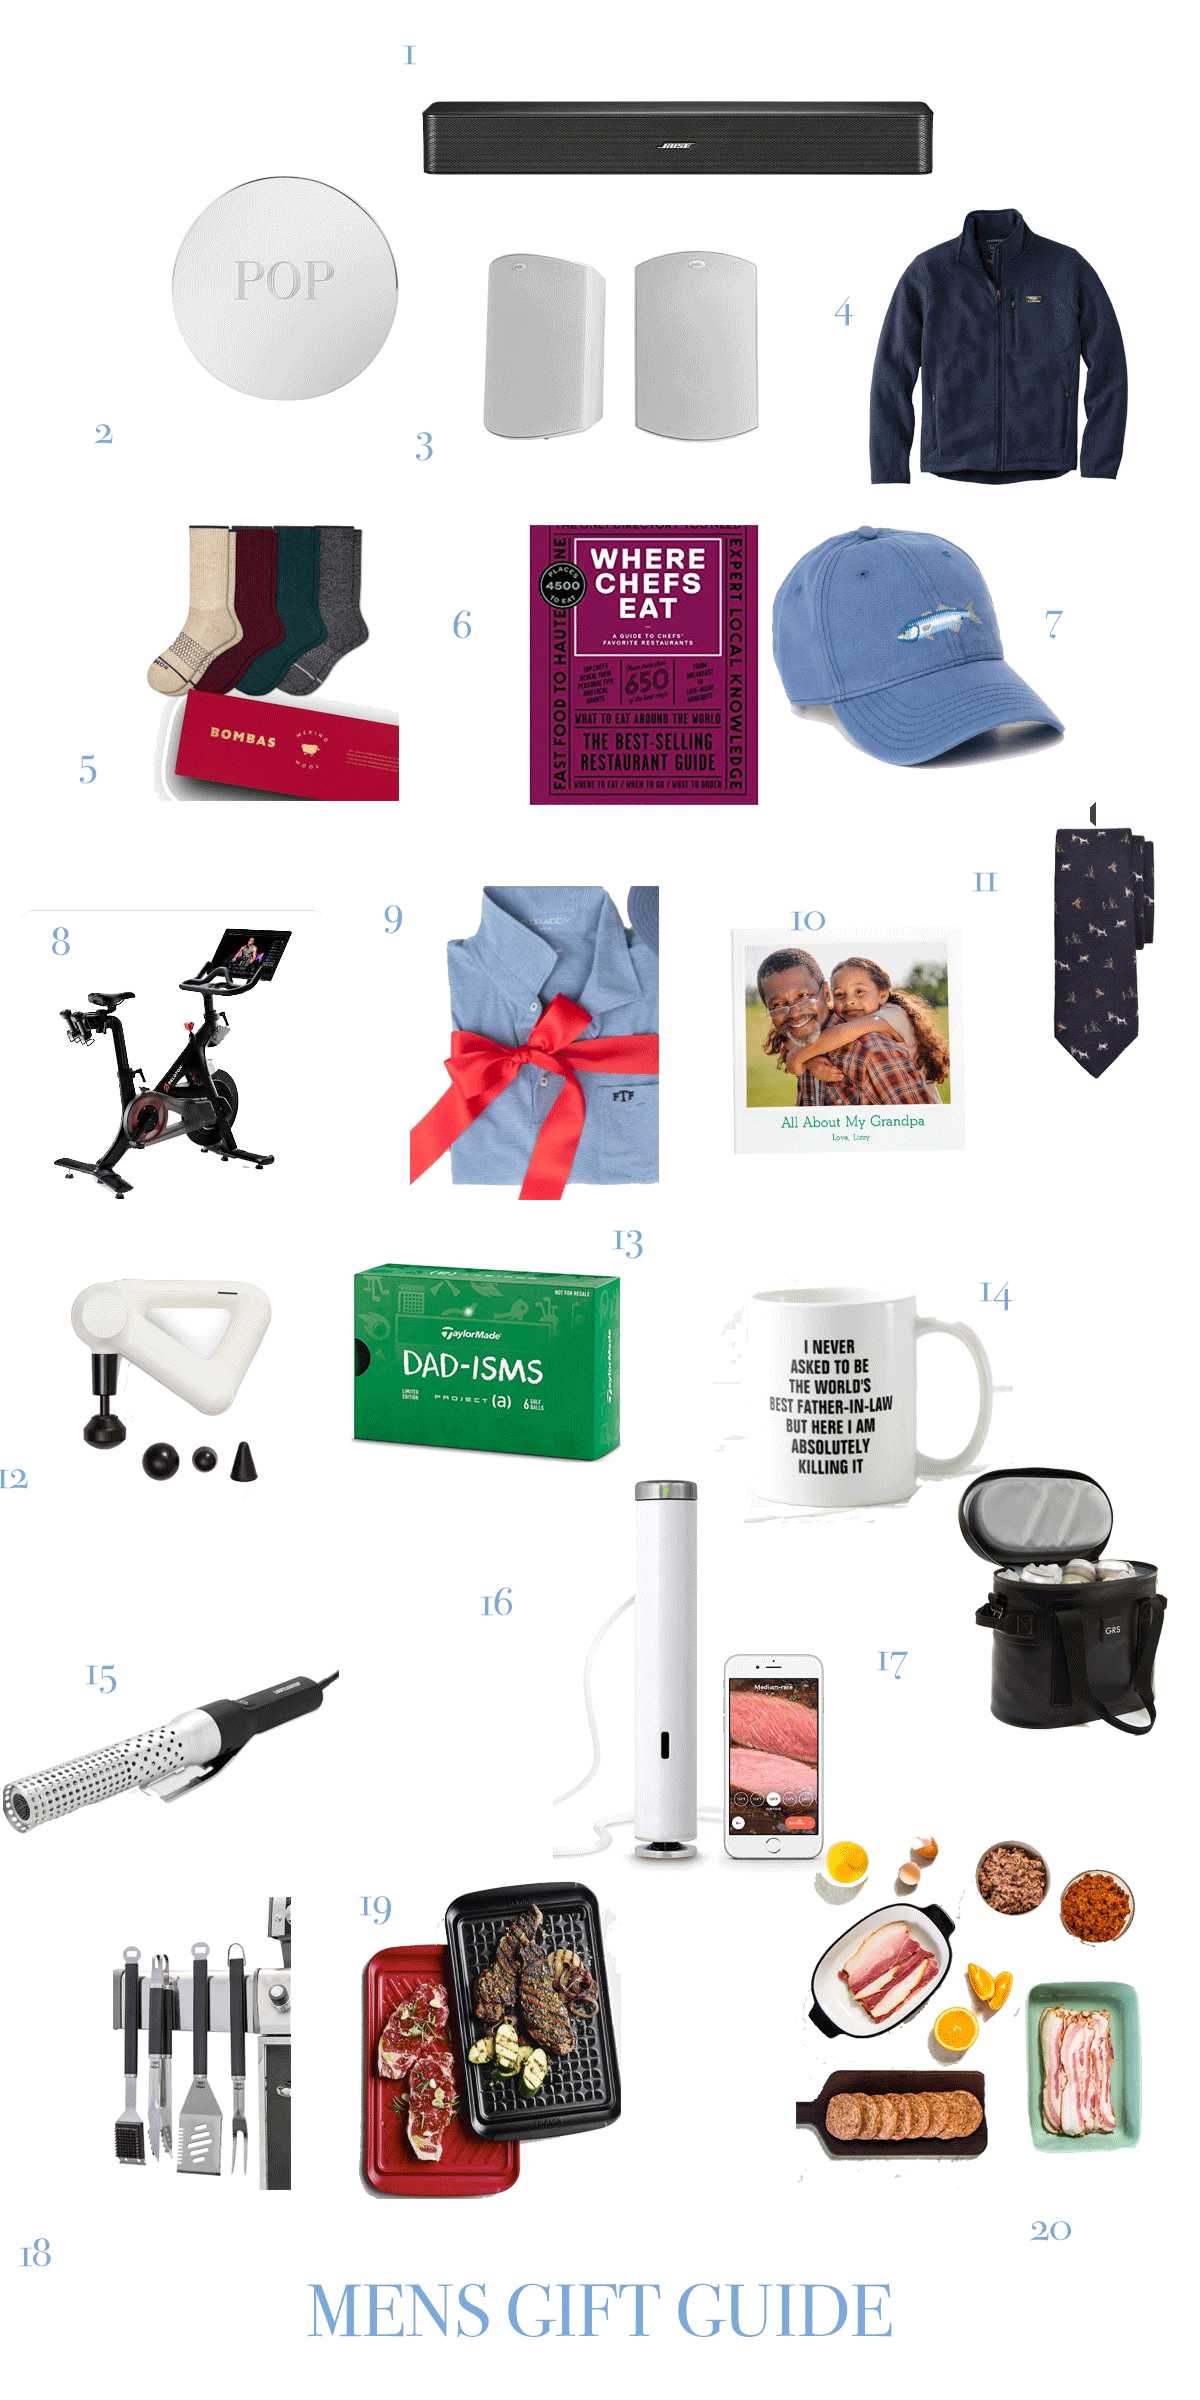 Gift Guide for Him / Luxury / stocking stuffer ideas - Sarah Tucker